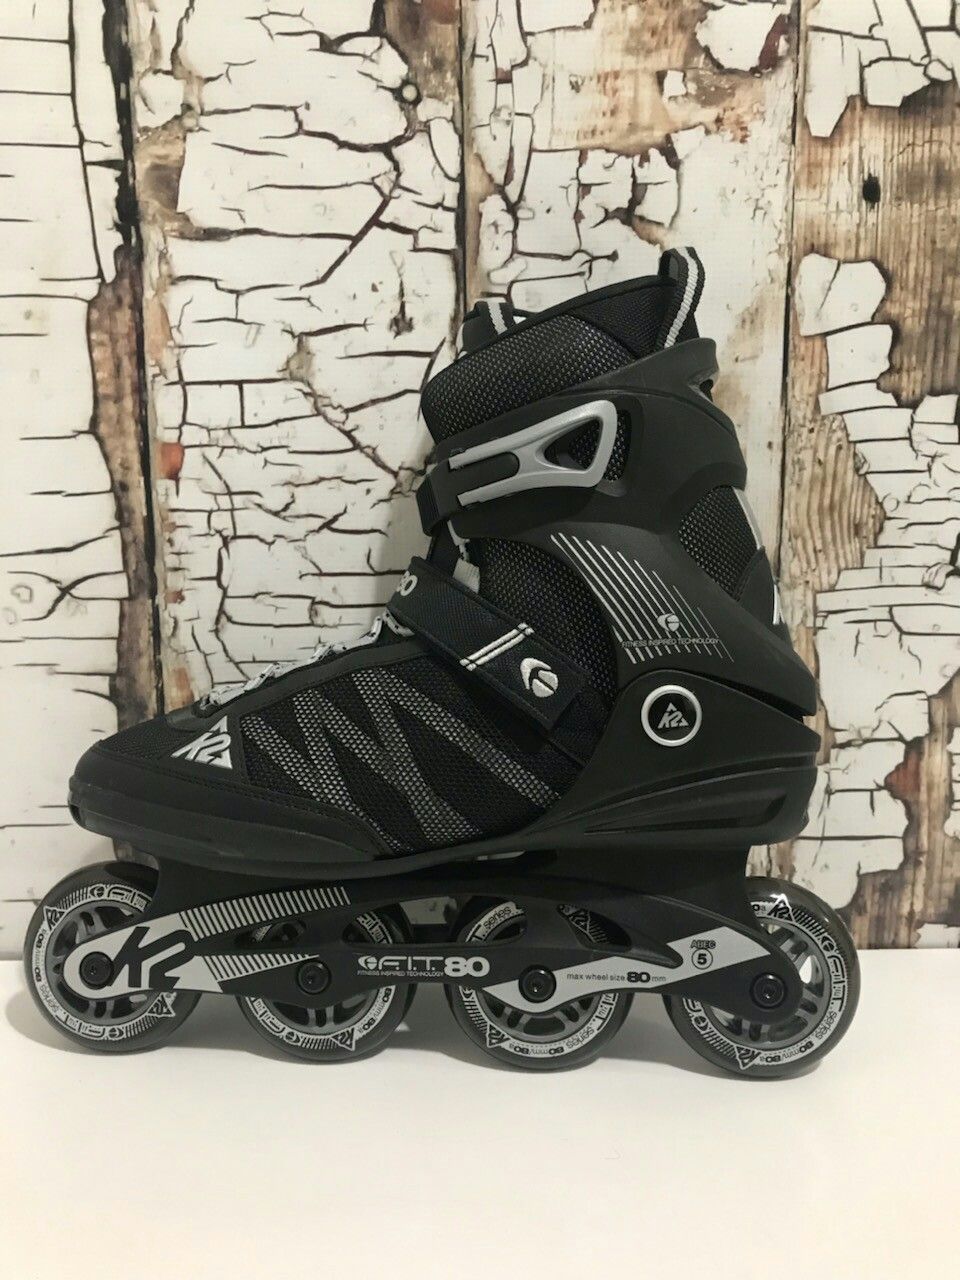 New In-Line Roller Skates K2 Fit 80 Size 10.5